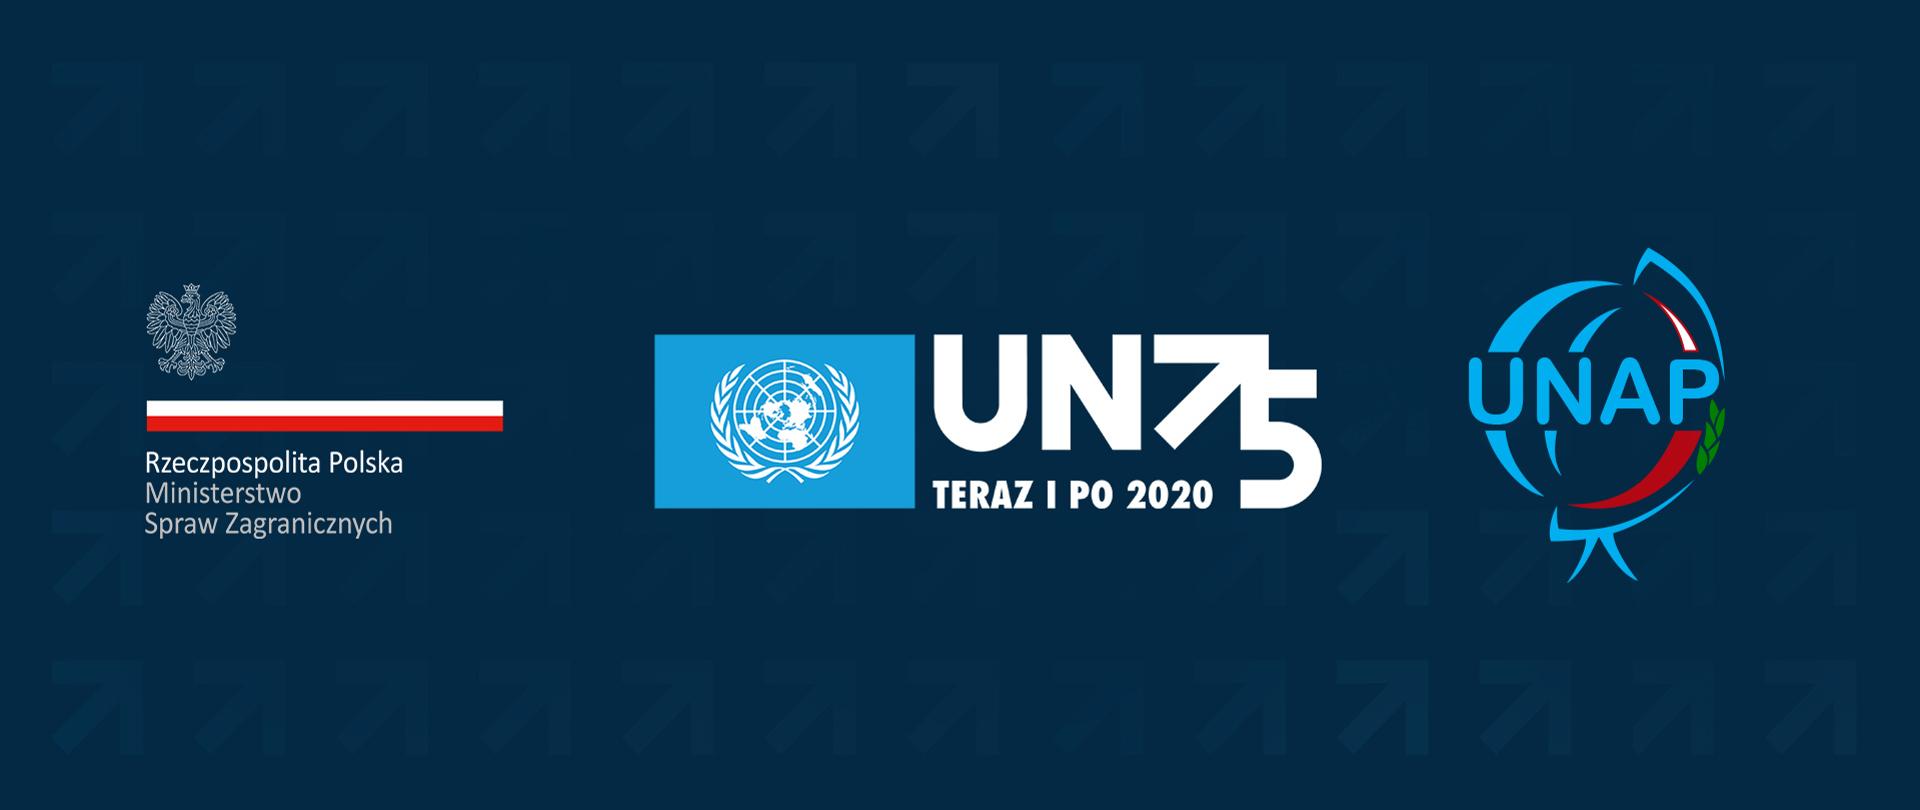 Неделя ООН – 75-ая годовщина создания Организации Объединенных Наций